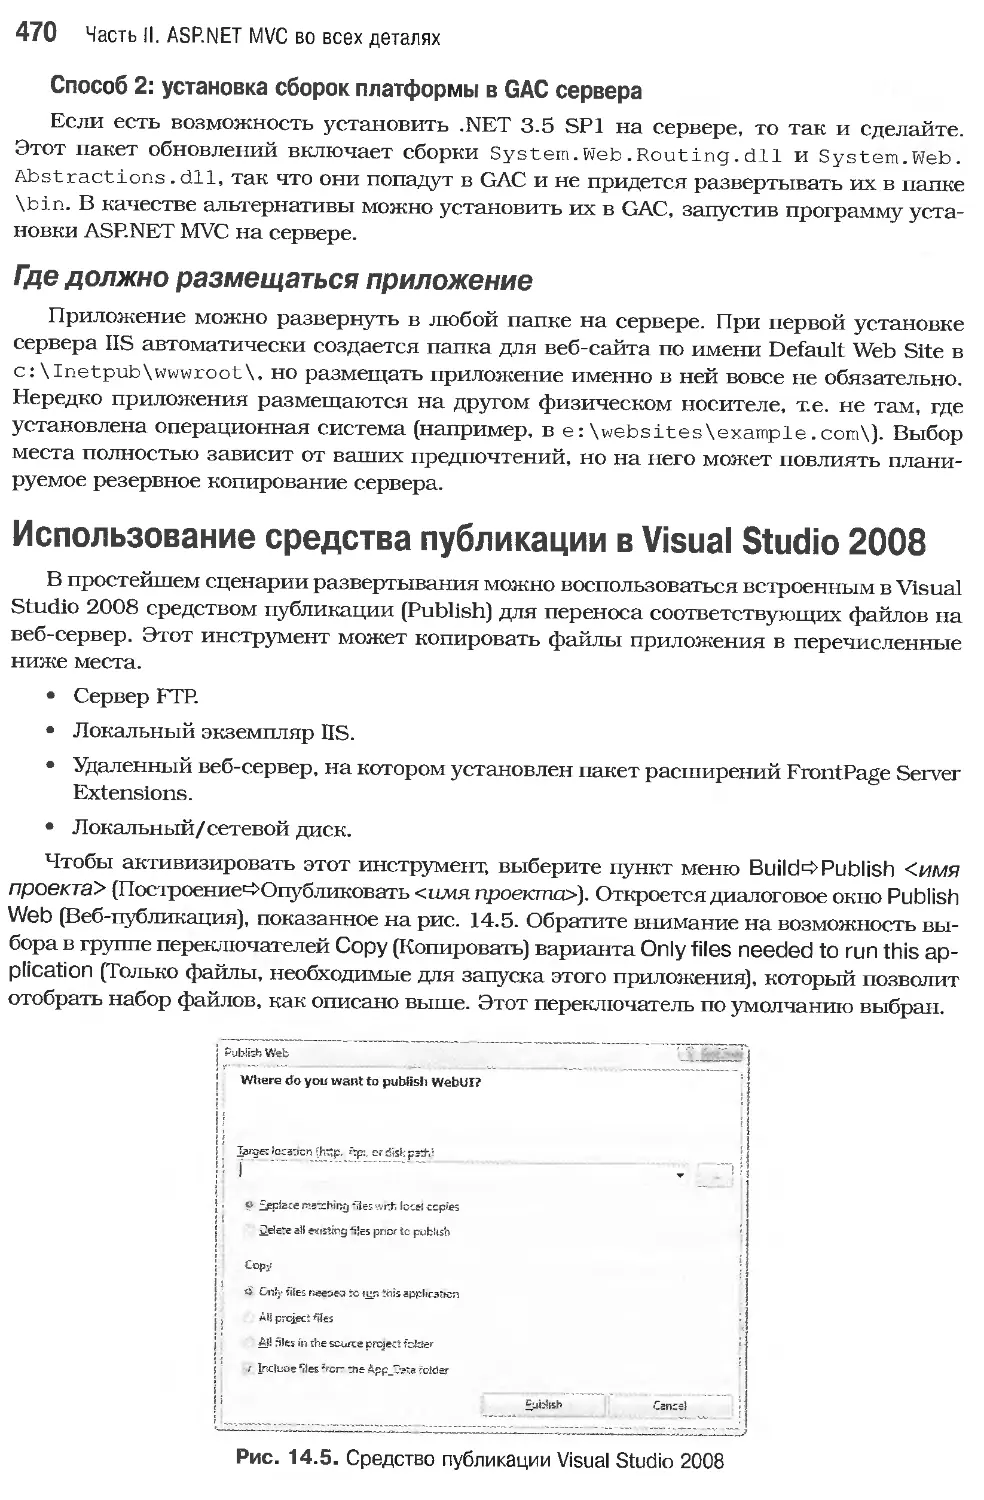 Использование средства публикации в Visual Studio 2008